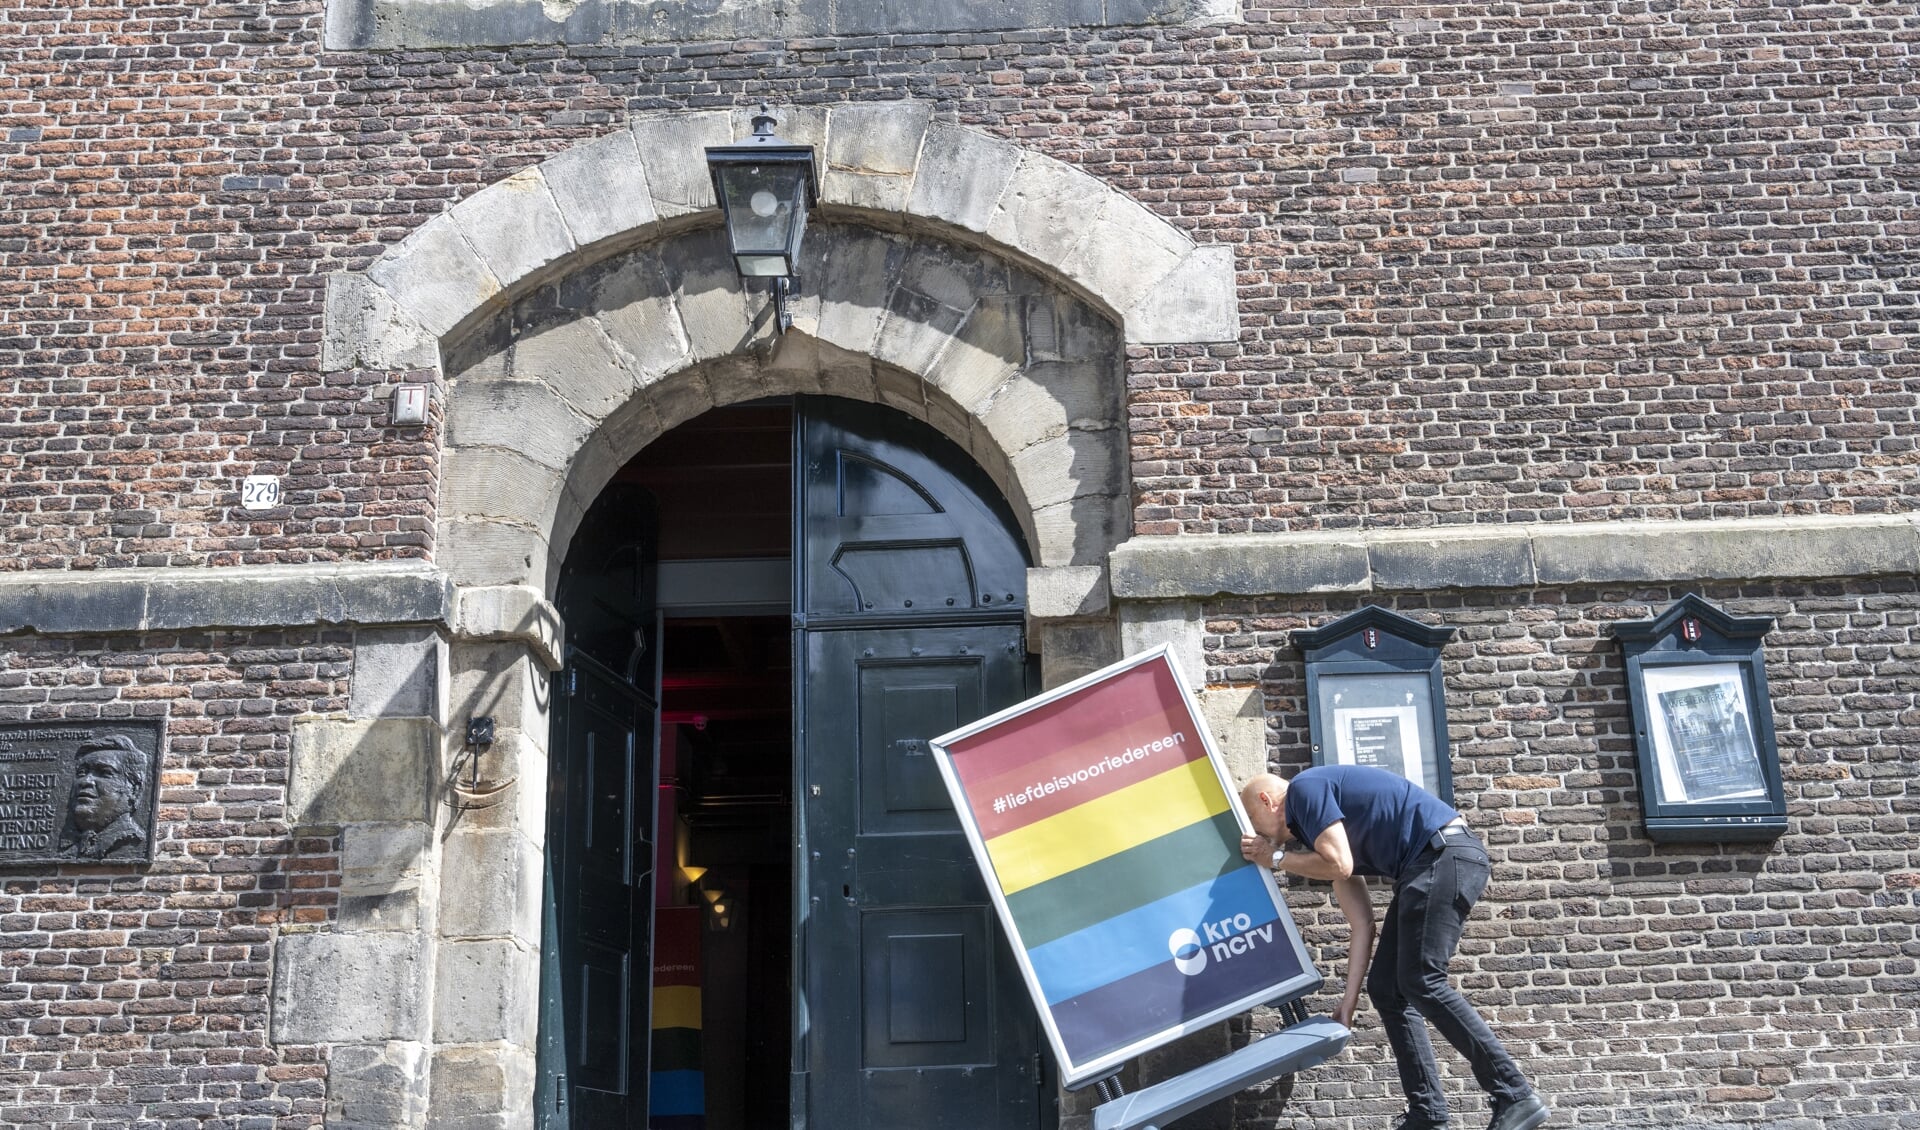 'Liefde is voor iedereen' staat er op het bord voor de Amsterdamse Westerkerk. De meeste christelijke ethici erkennen tegenwoordig dat genderdysforie een medisch probleem is.